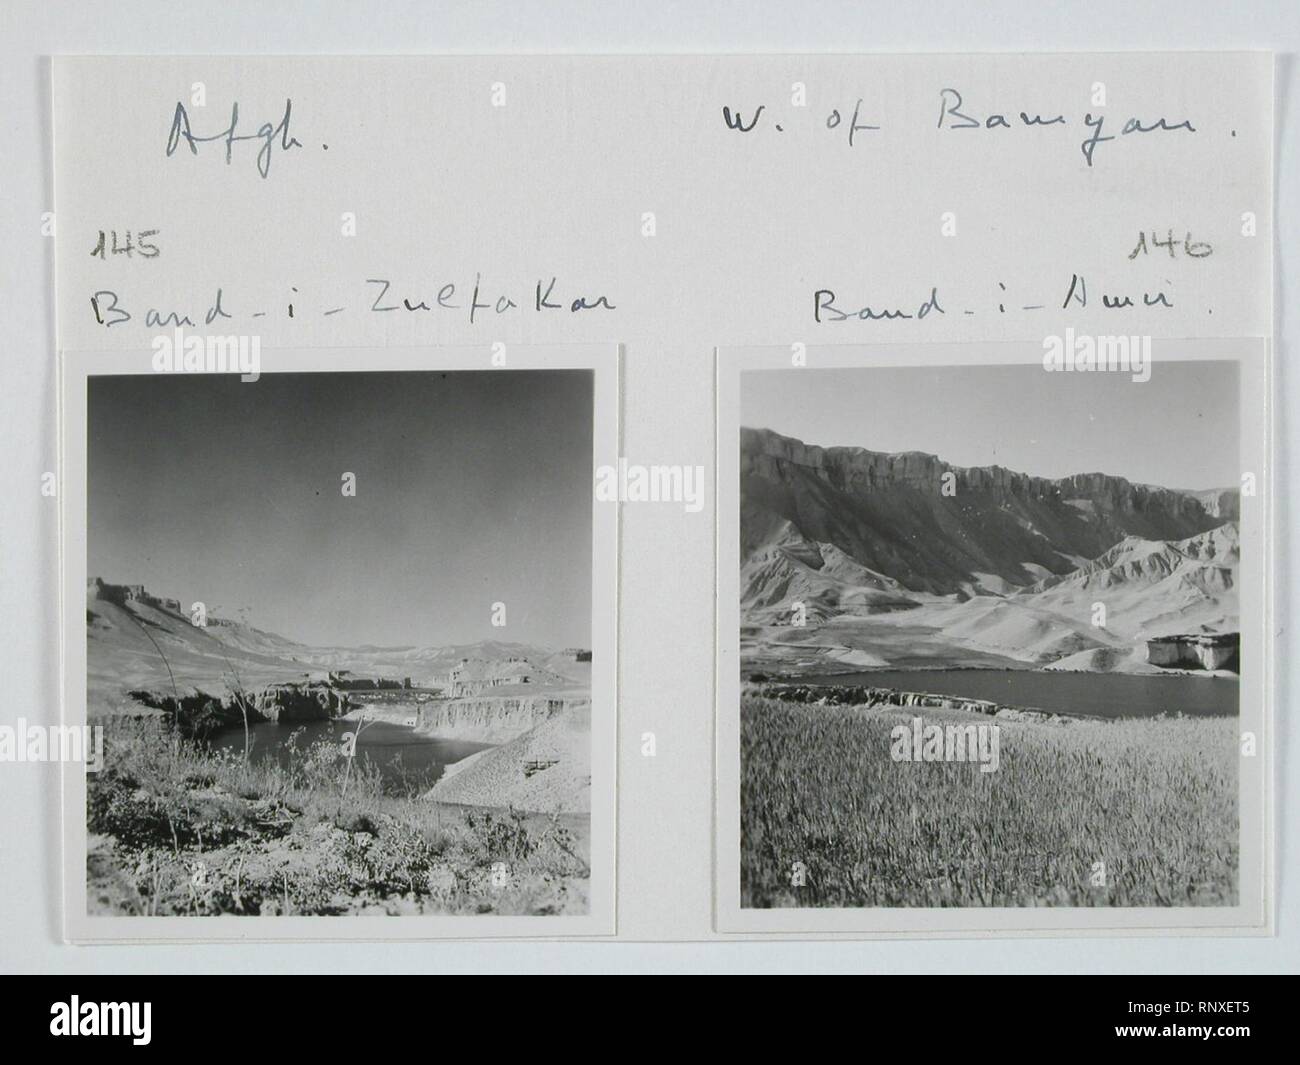 CH-NB - Afghanistan, Band-i-Emir, Band-i-Amir (Band-e-Amir)- Landschaft - Annemarie Schwarzenbach - SLA-Schwarzenbach-A-5-20-187. Stock Photo